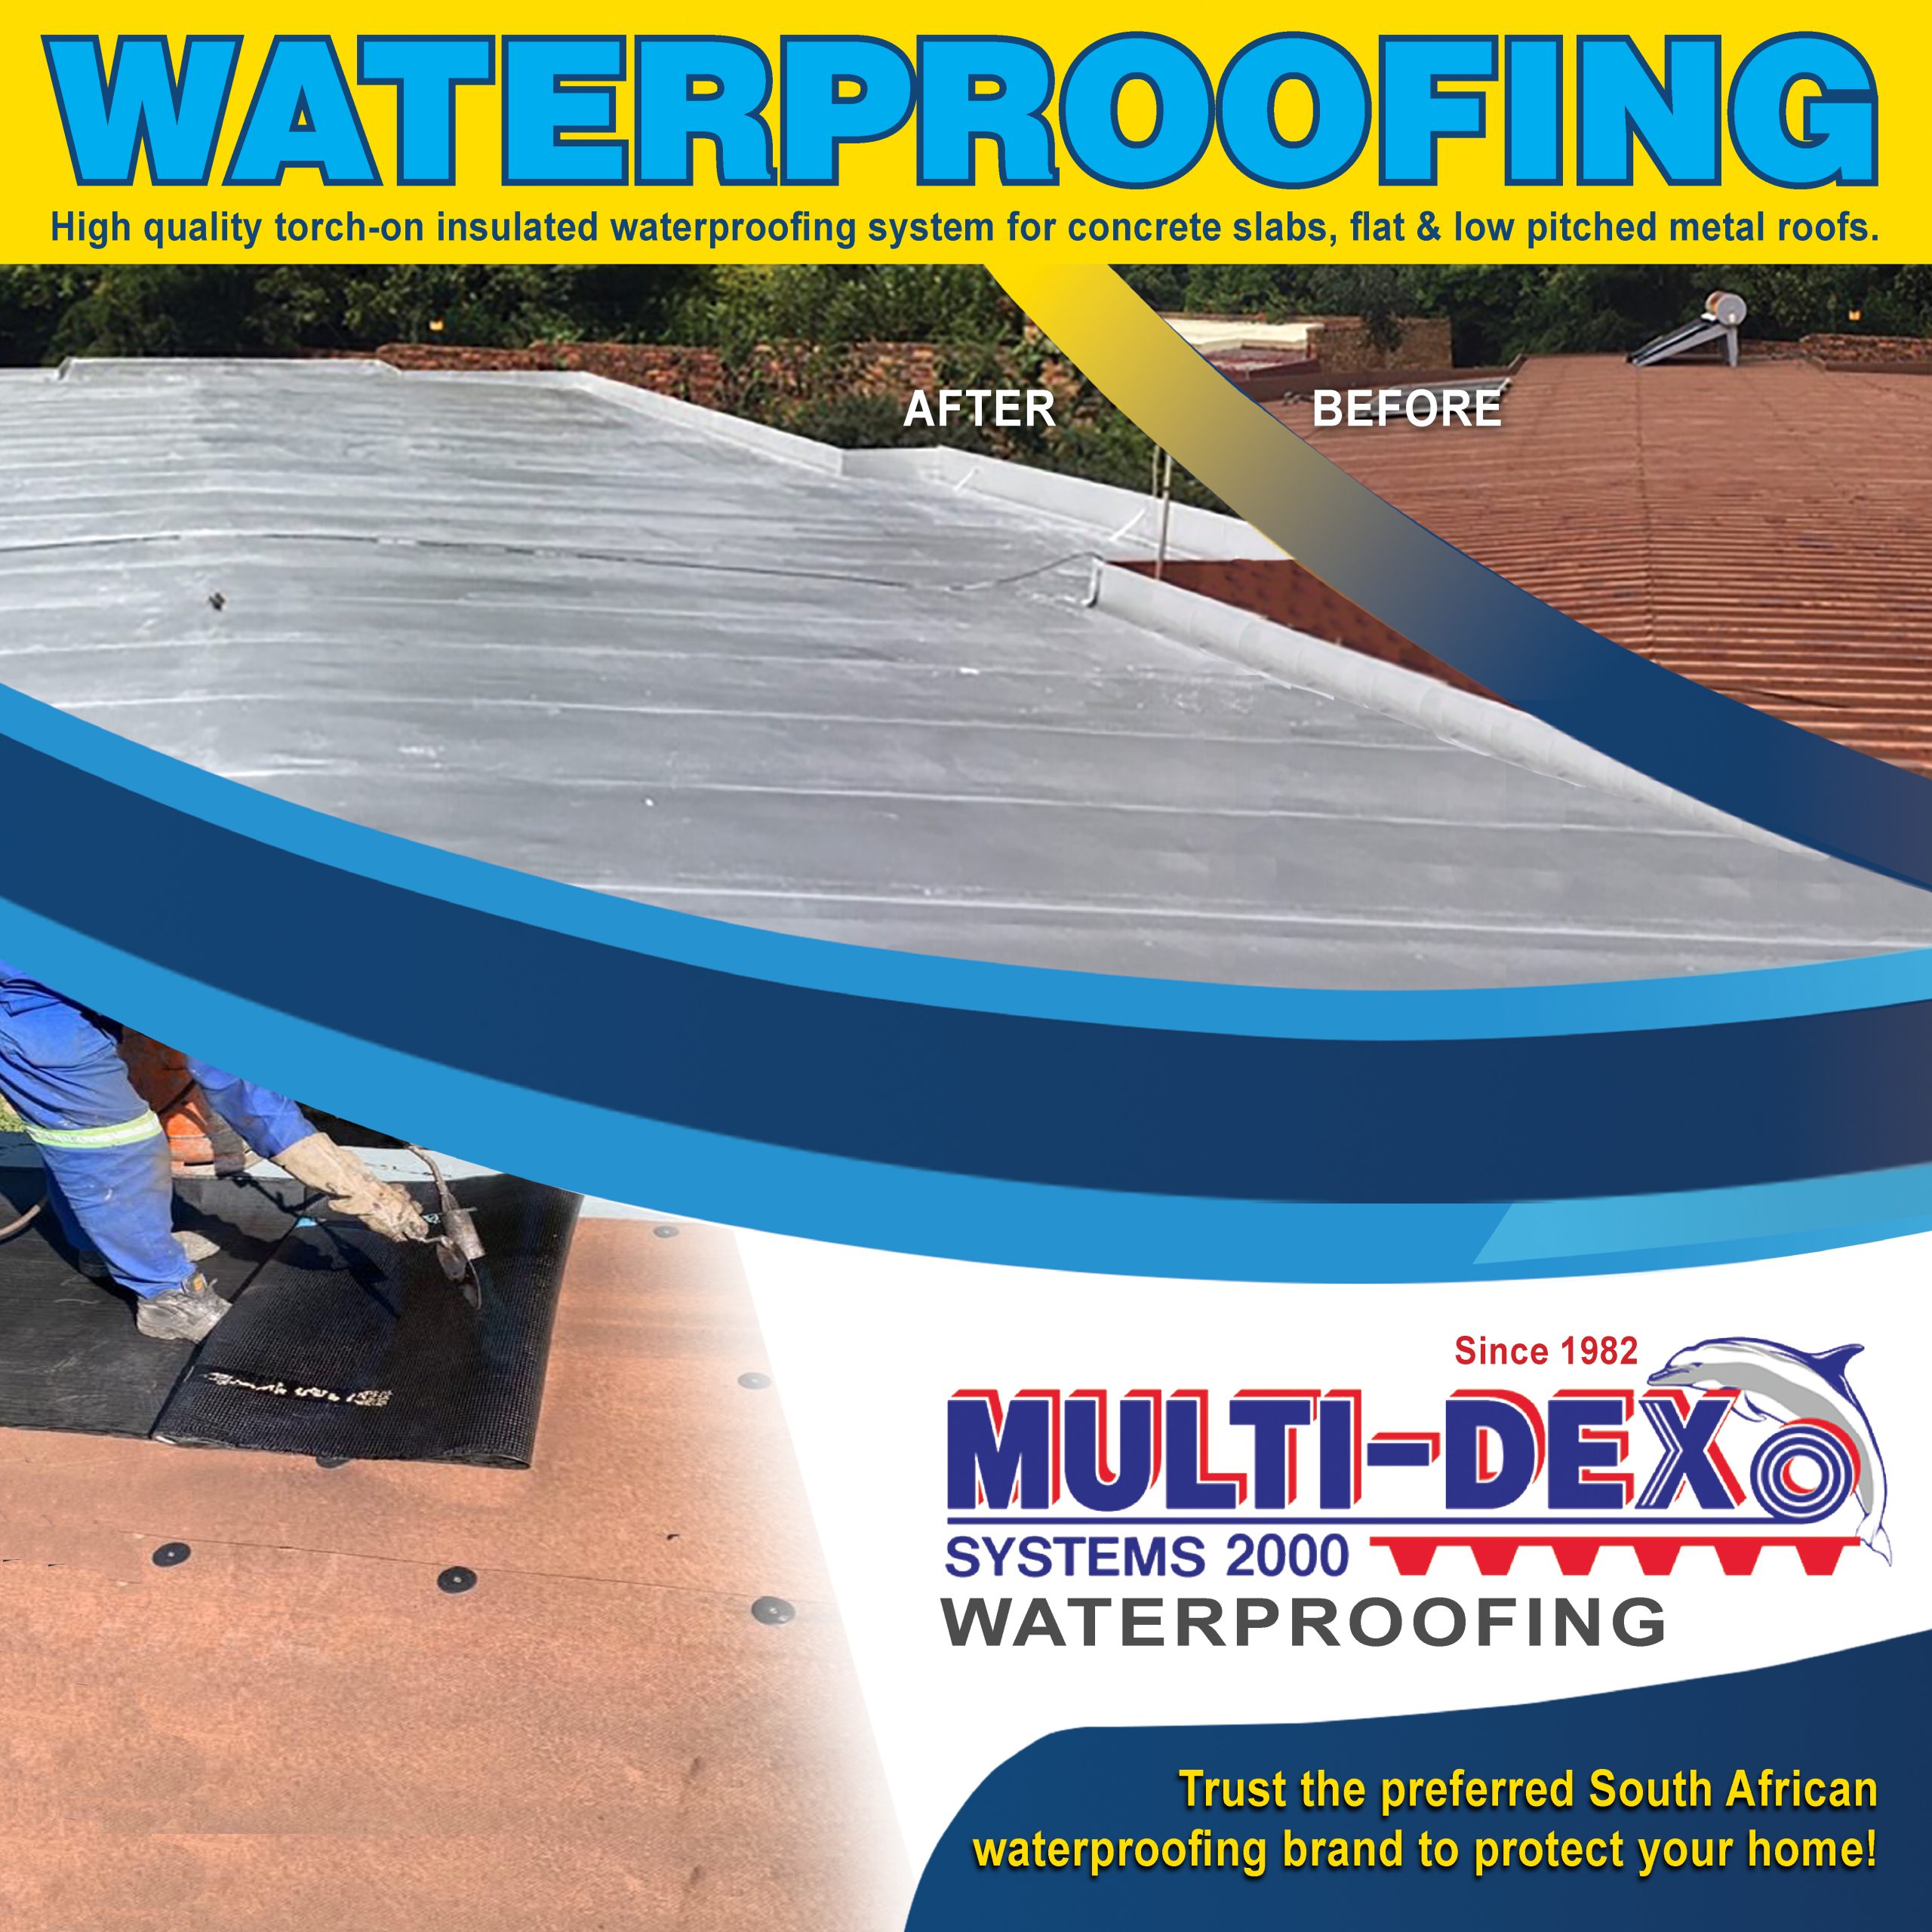 multi-dex waterproofing